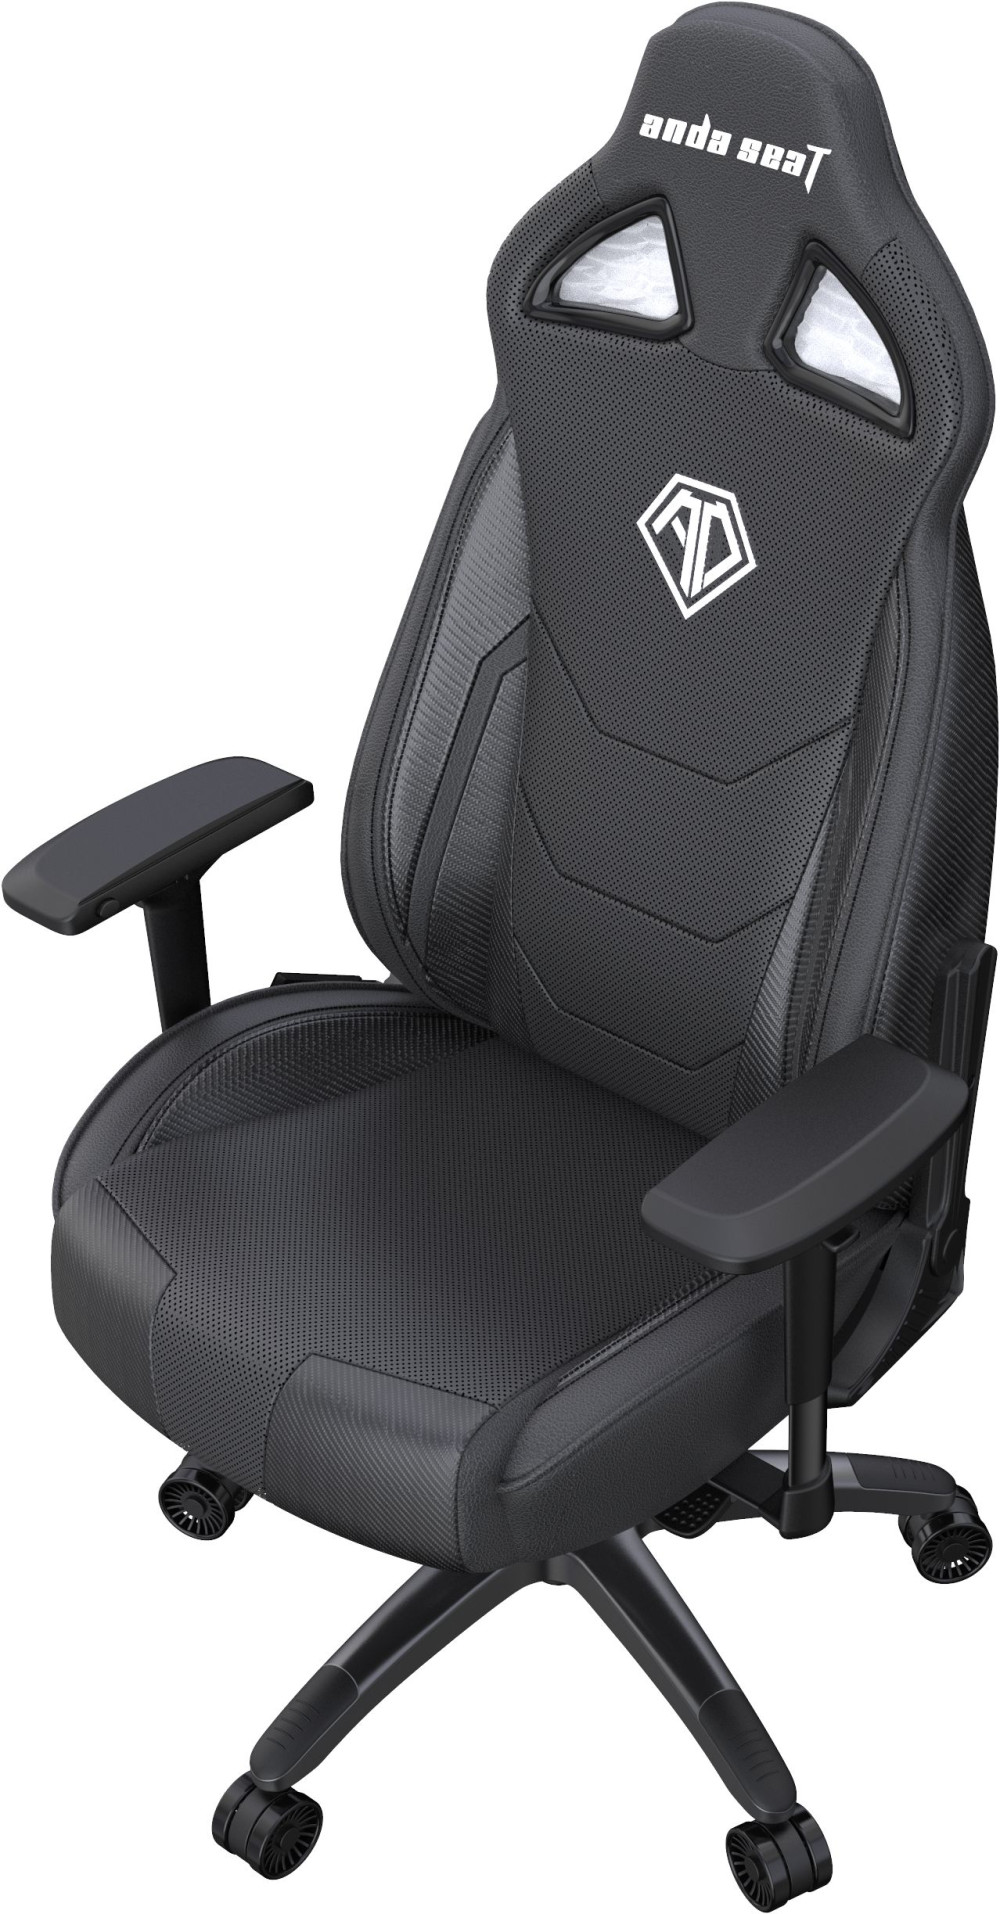   Anda Seat Throne Series Premium ()